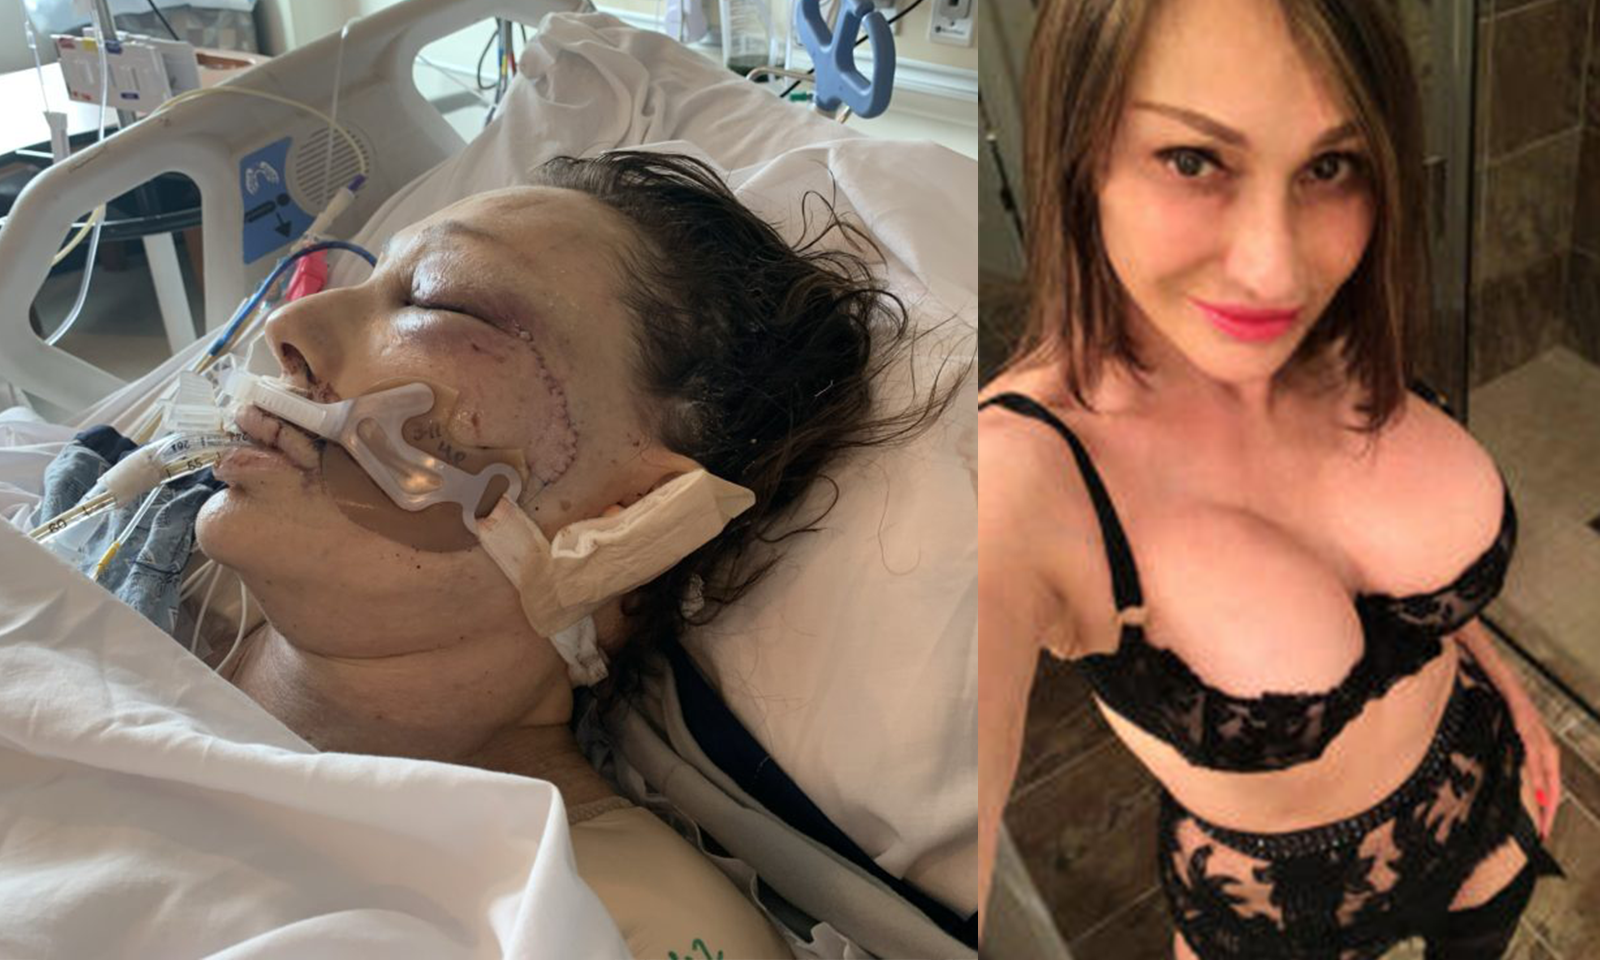 GoFundMe Set Up for Jillian Foxxx After Assault in Home